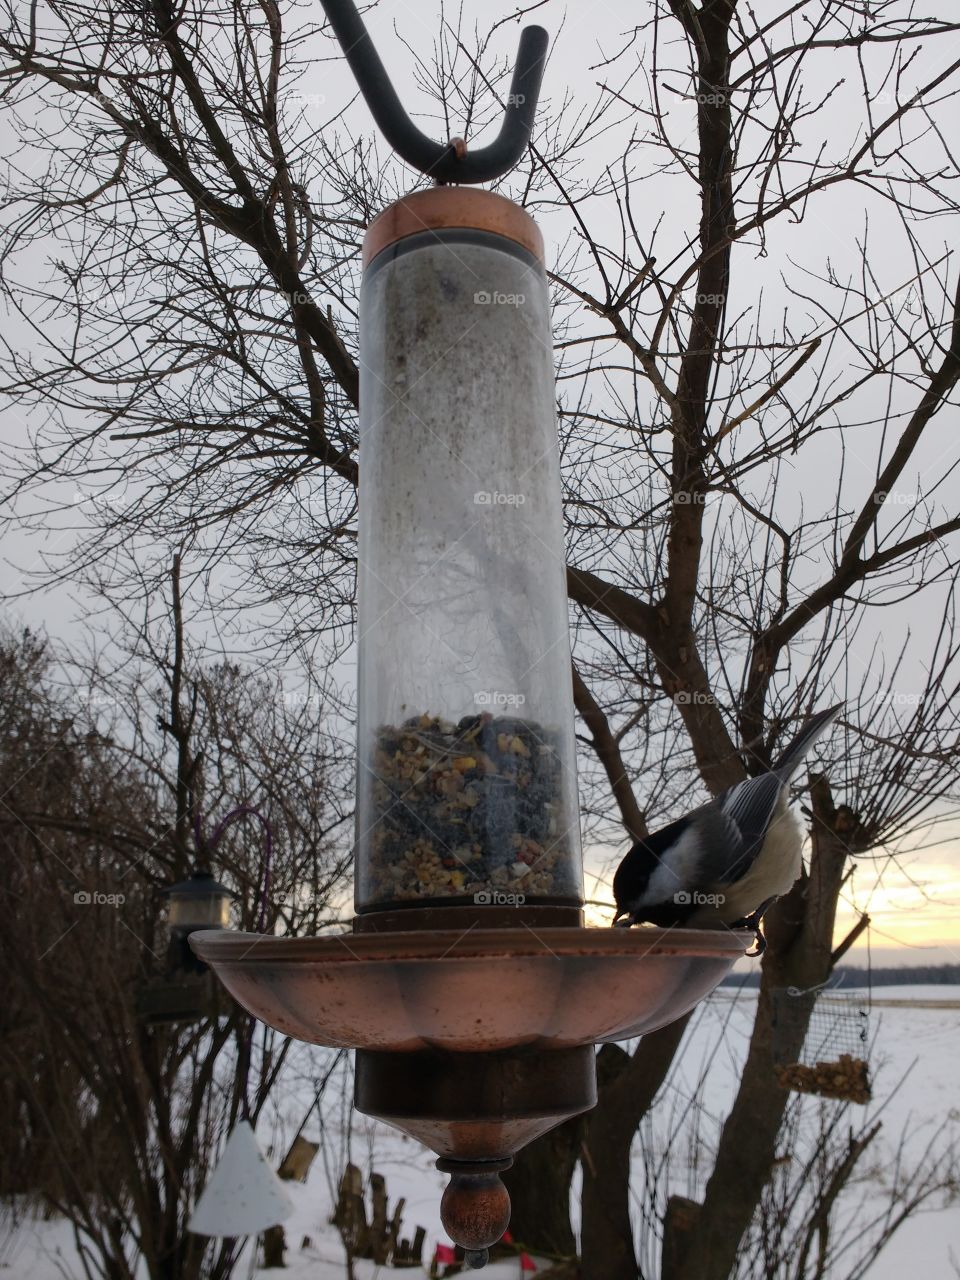 Chickadee at bird feeder